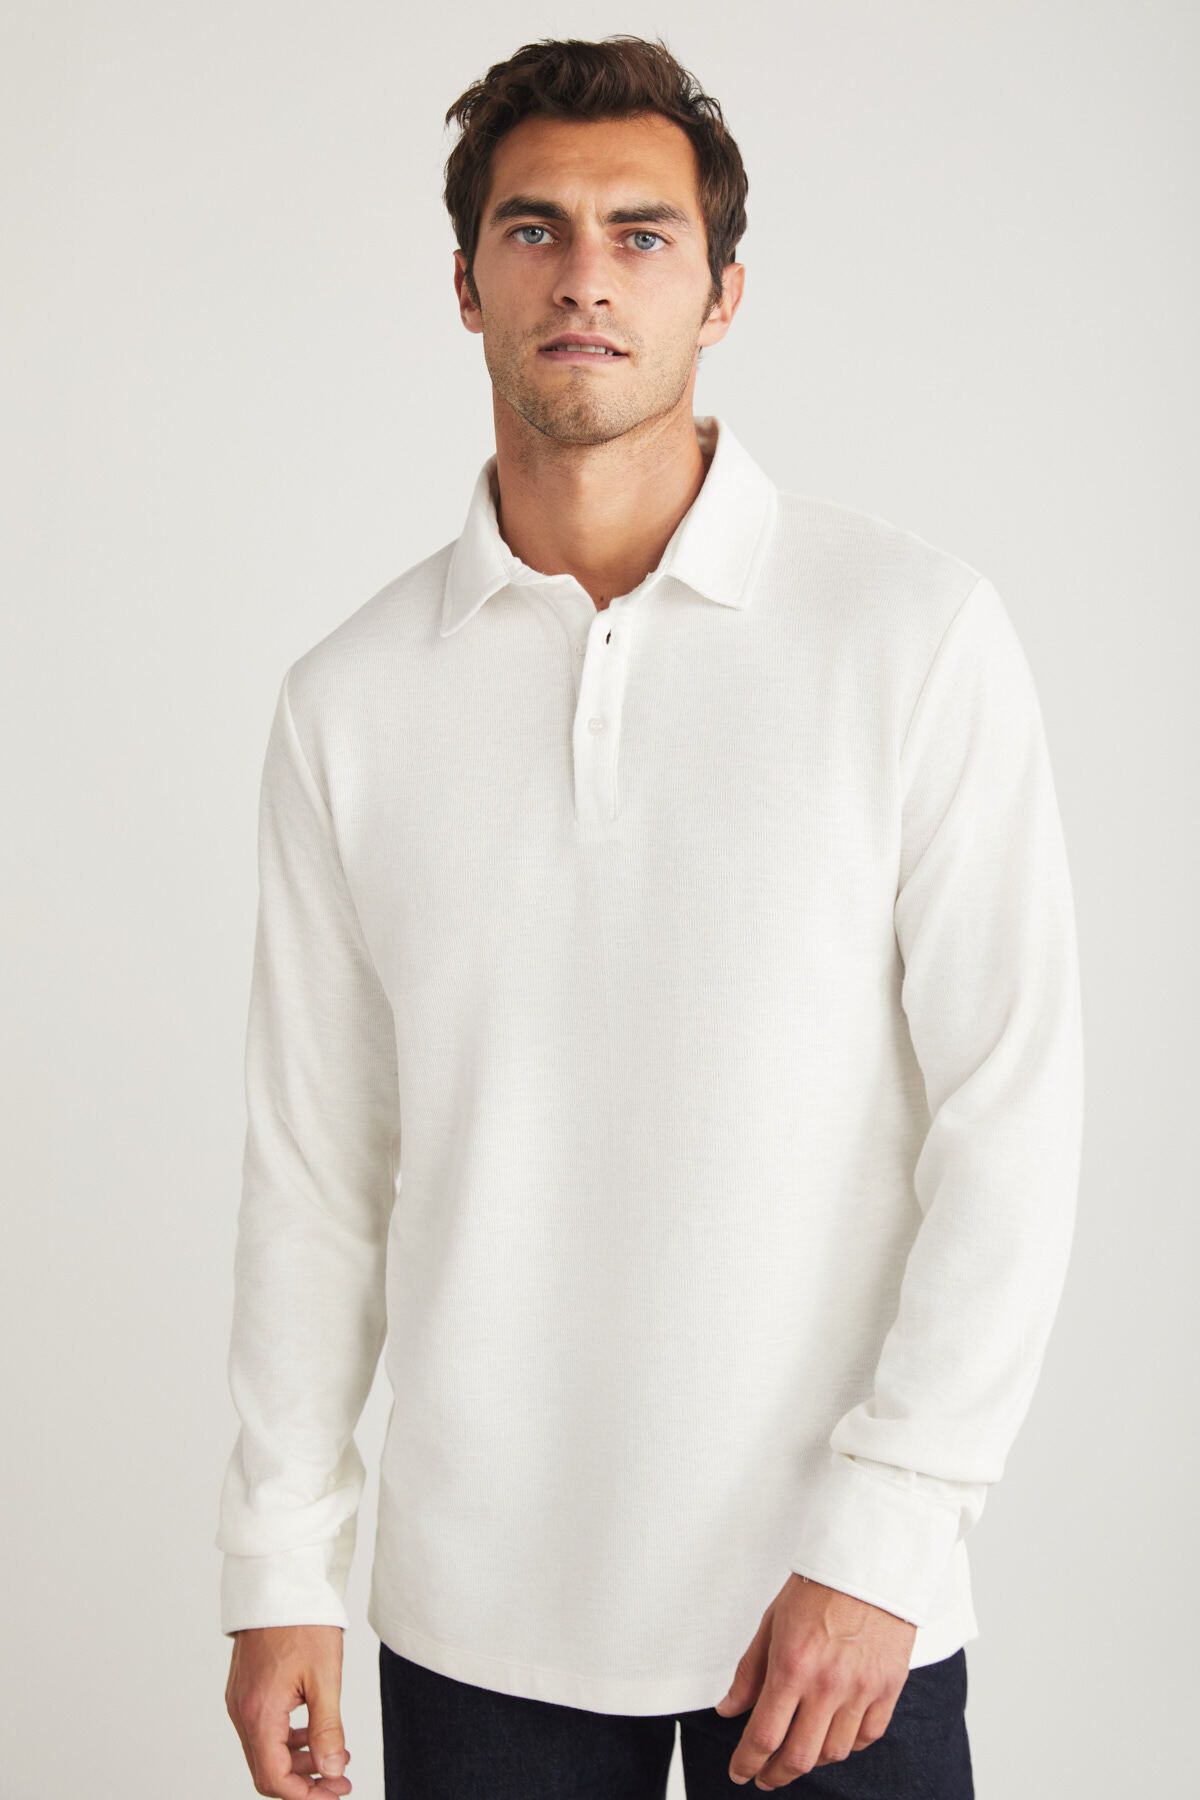 GRIMELANGE Tremont Erkek Slim Fit Dokulu Kumaşlı Uzun Kol Ekru Polo Yaka T-shirt